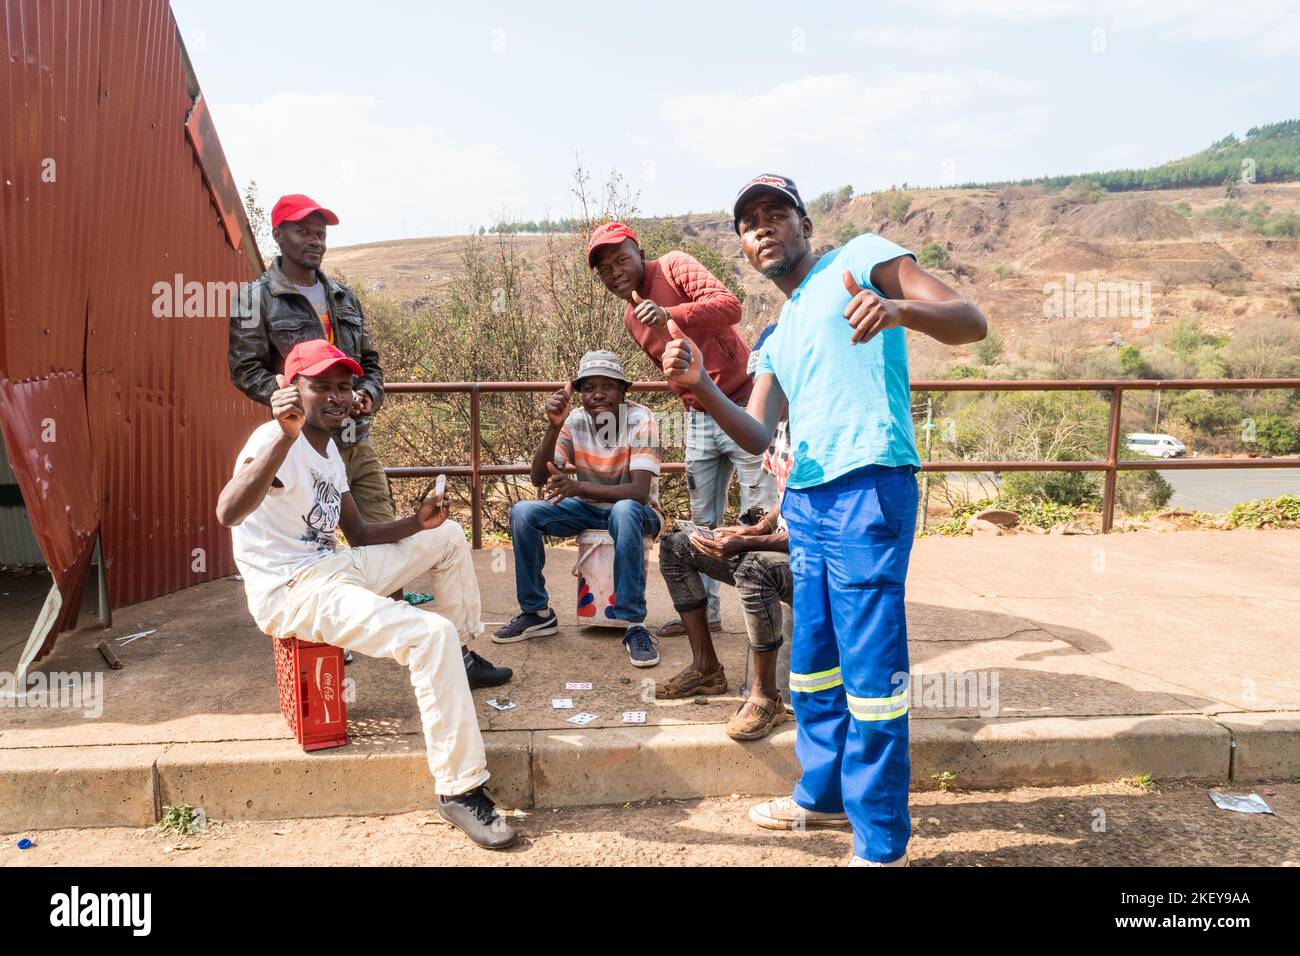 Südafrikanische Gruppe von Männern spielen ein Kartenspiel auf der Seite der Straße geben einen freundlichen Gruß oder Daumen nach oben Konzept des täglichen Lebens in Afrika Stockfoto